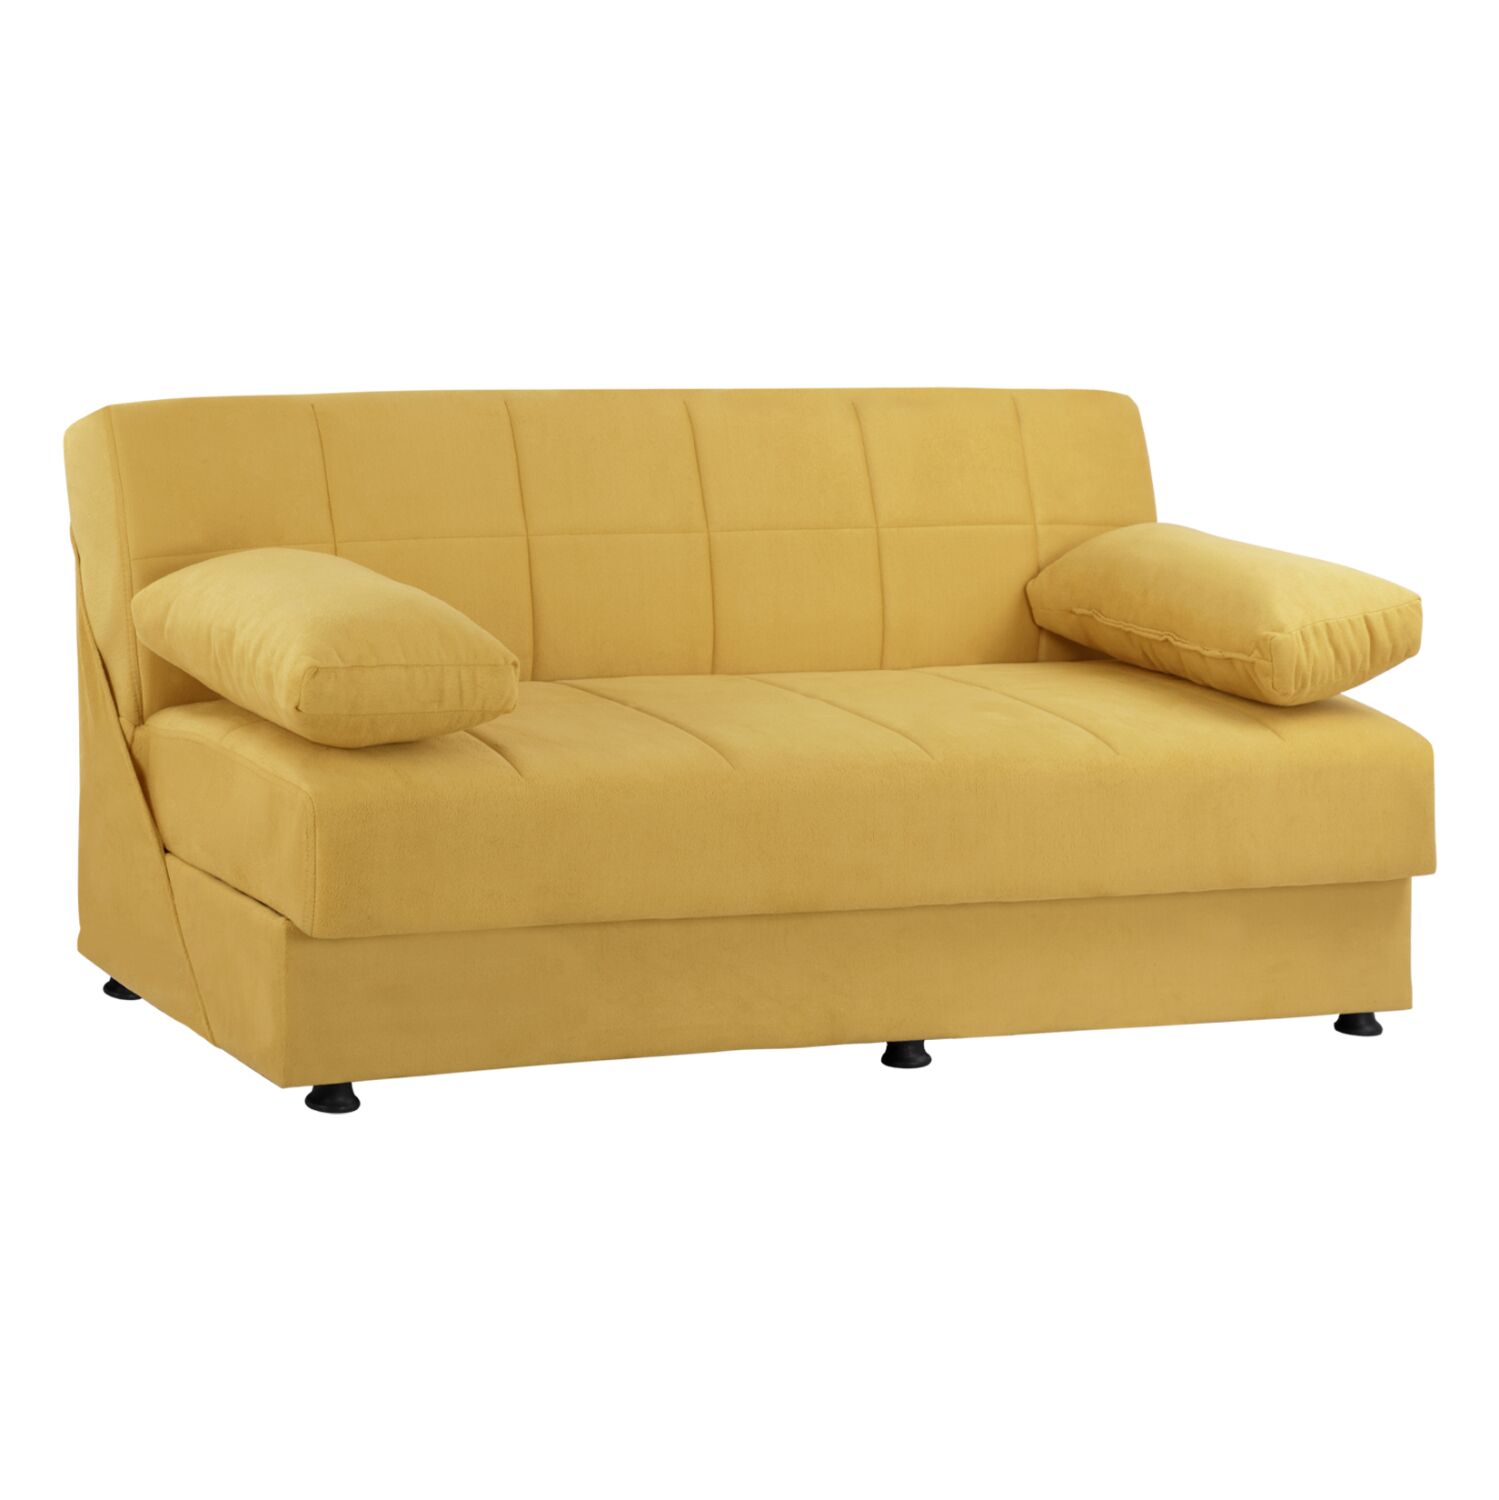 Sofa Bed Velvet Gold 3 Seater EGE 1215 HM3067.08 192x74x82Hcm